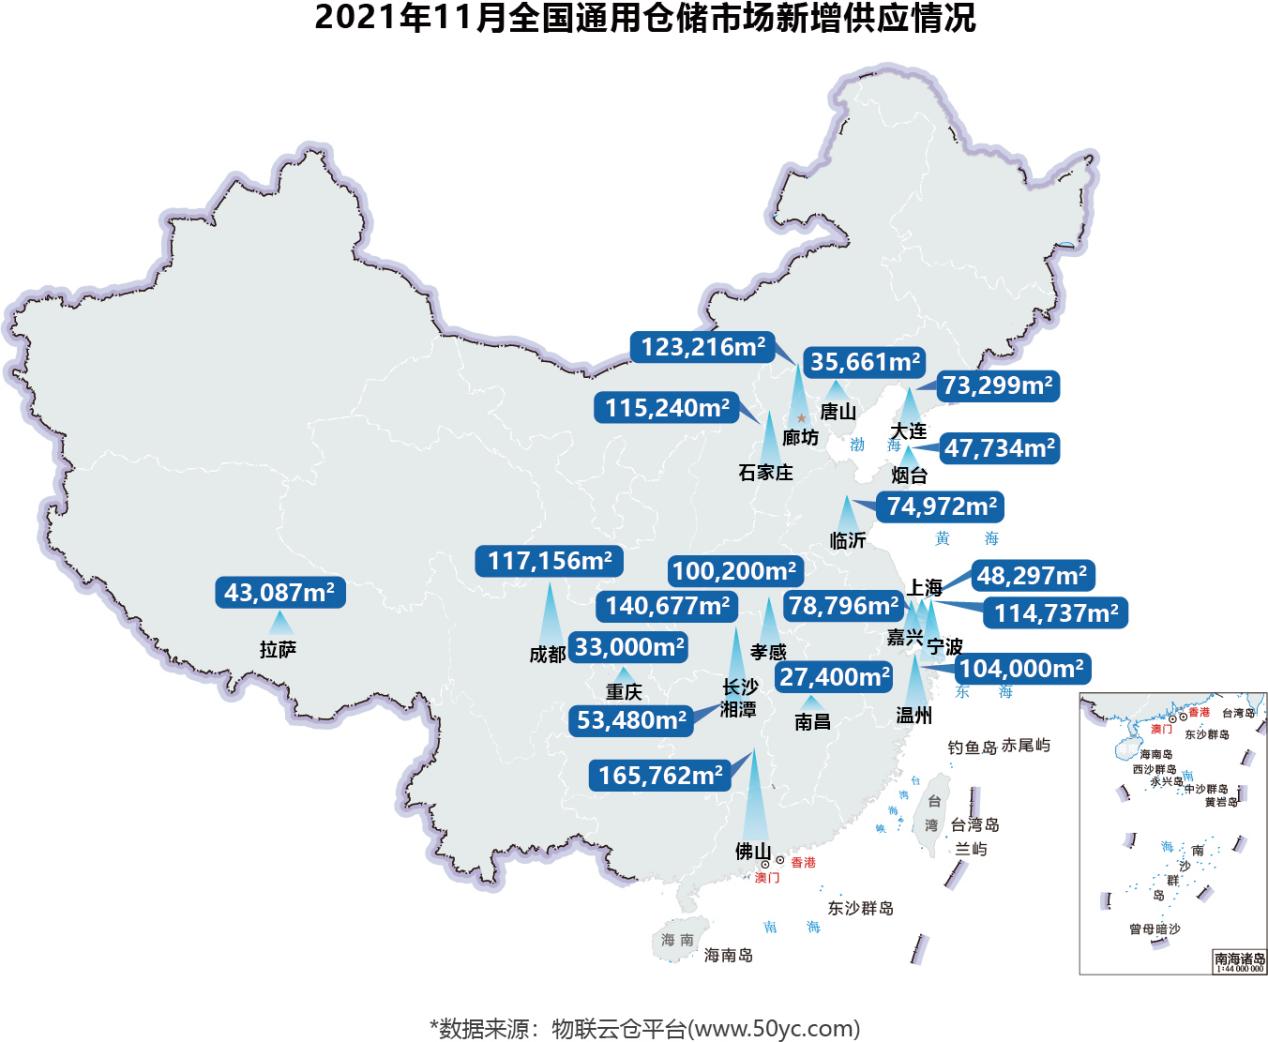 11月全国报告面积地图 - 中文(1)